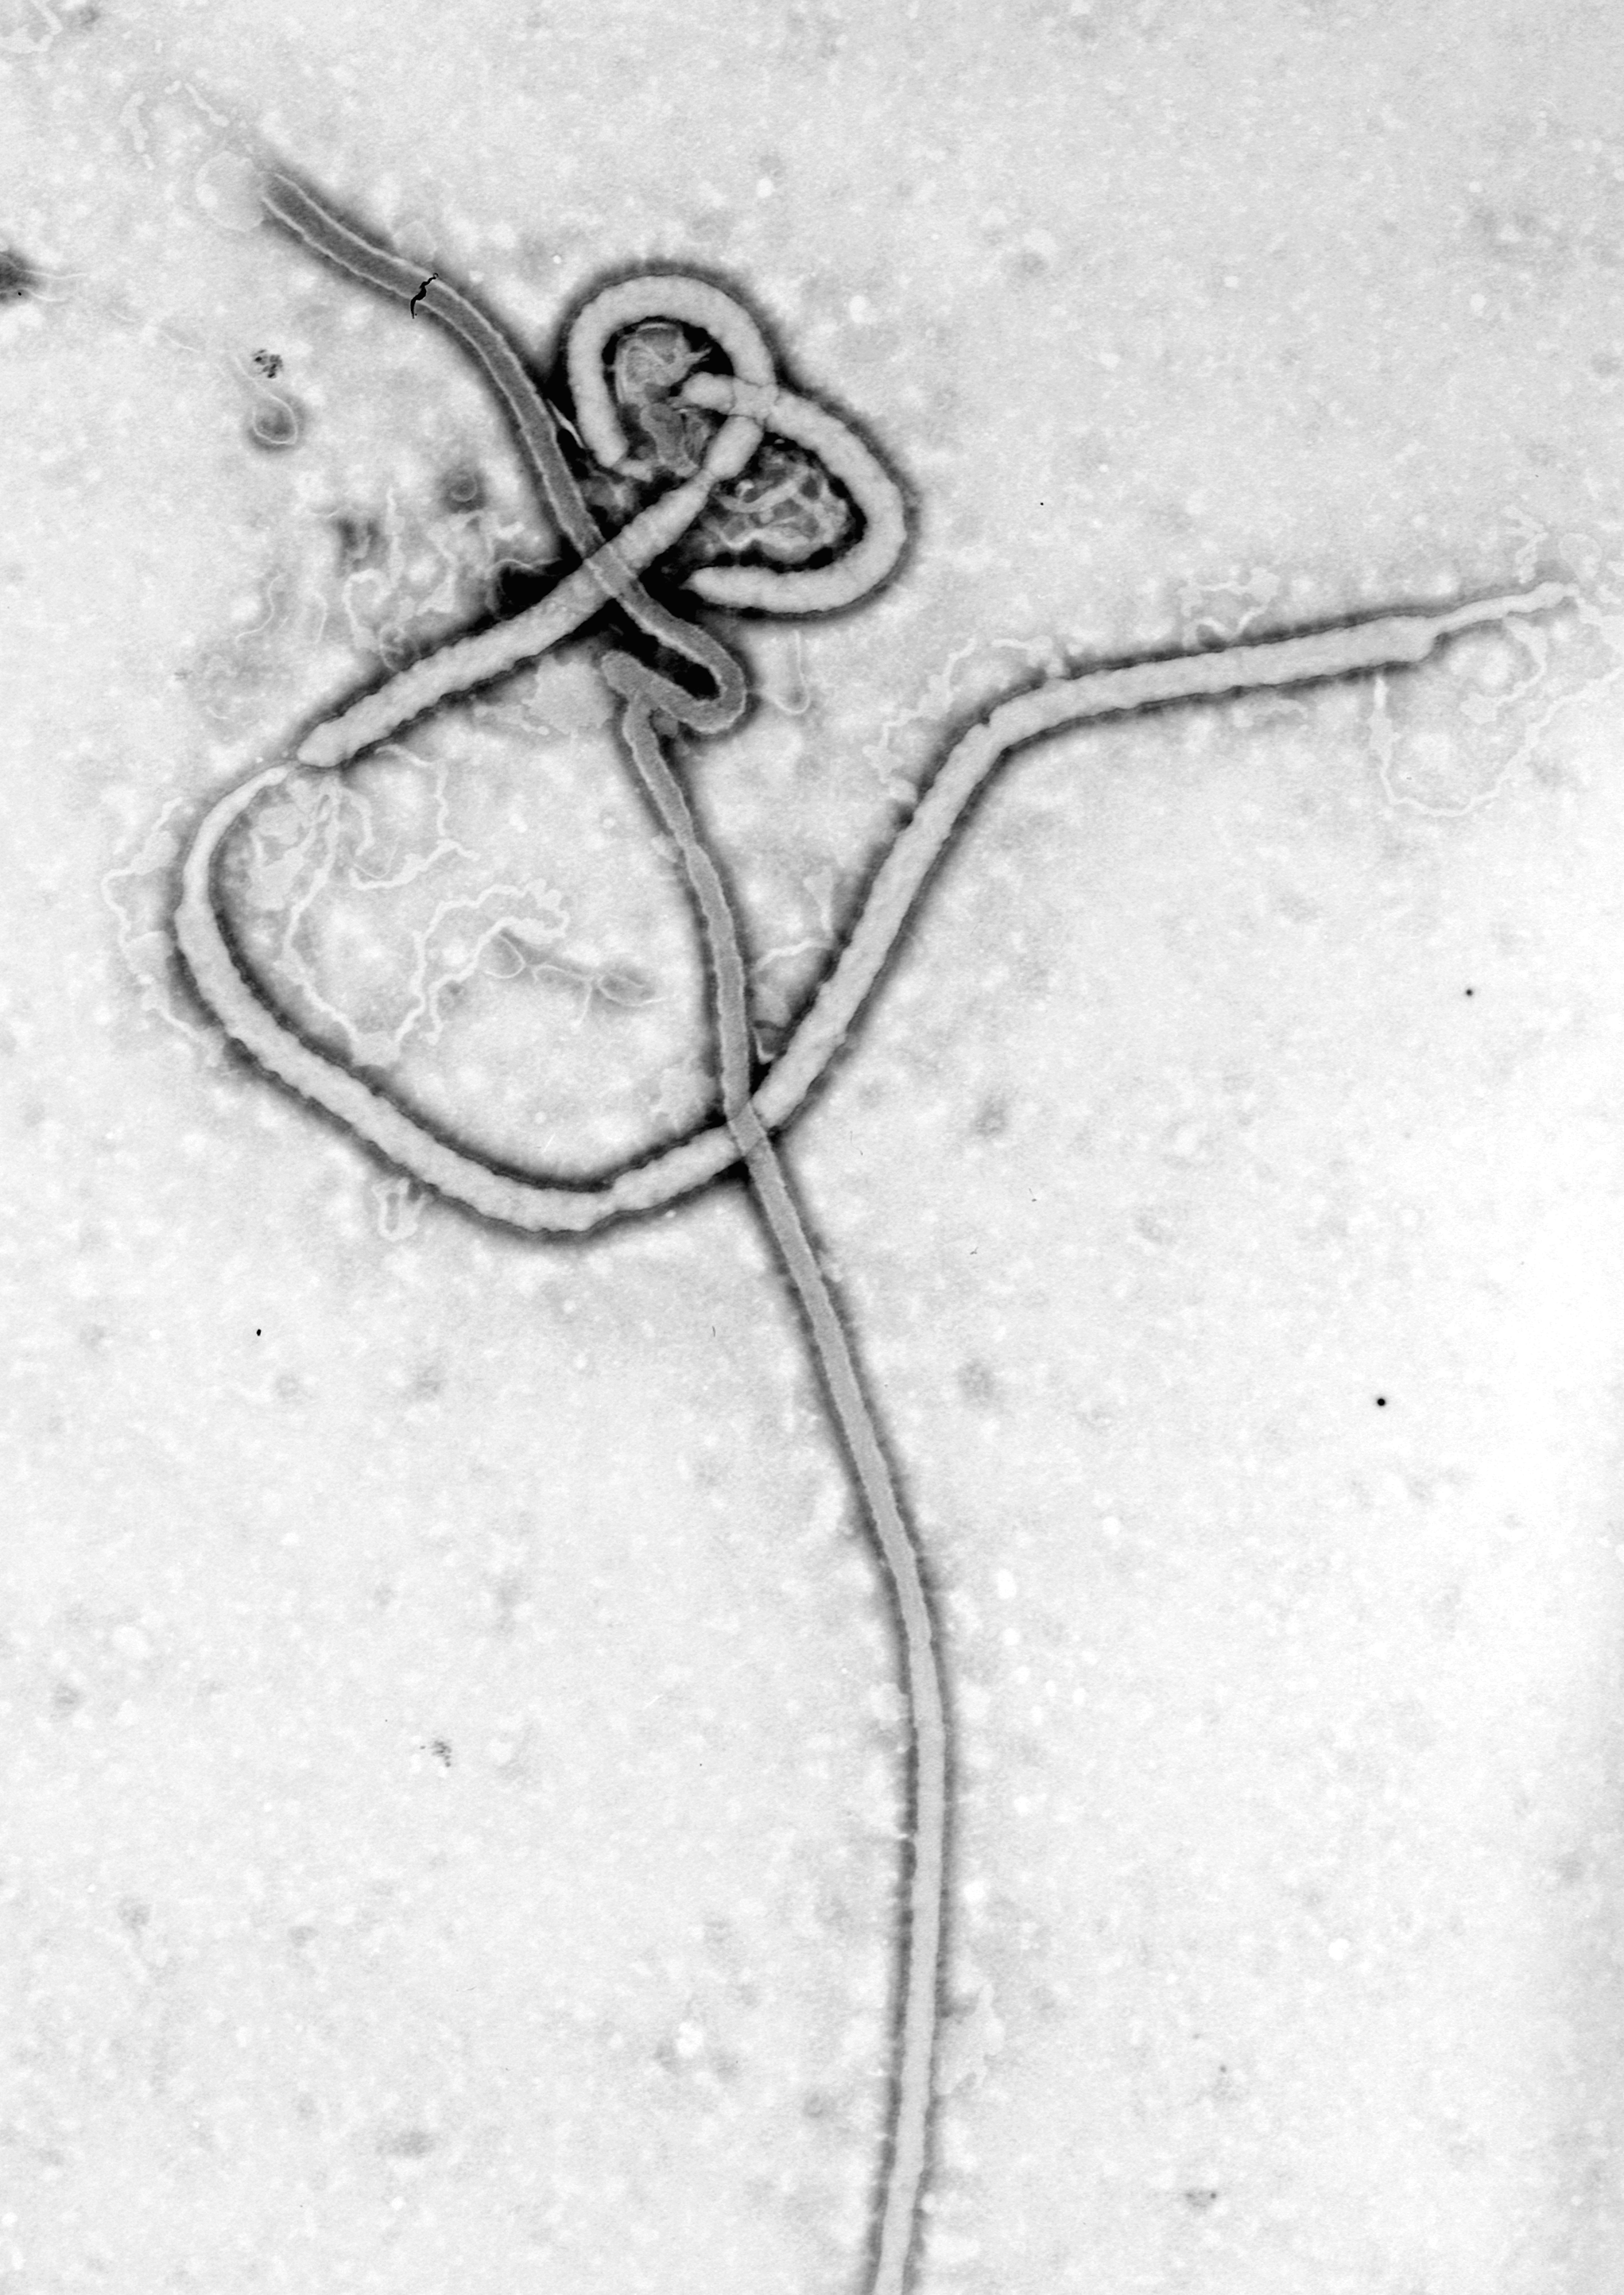  Virus Ébola (au microscope électronique) montrant la structure filamenteuse de la particule virale. Les filaments mesurent entre 60 et 80 nm de diamètre.